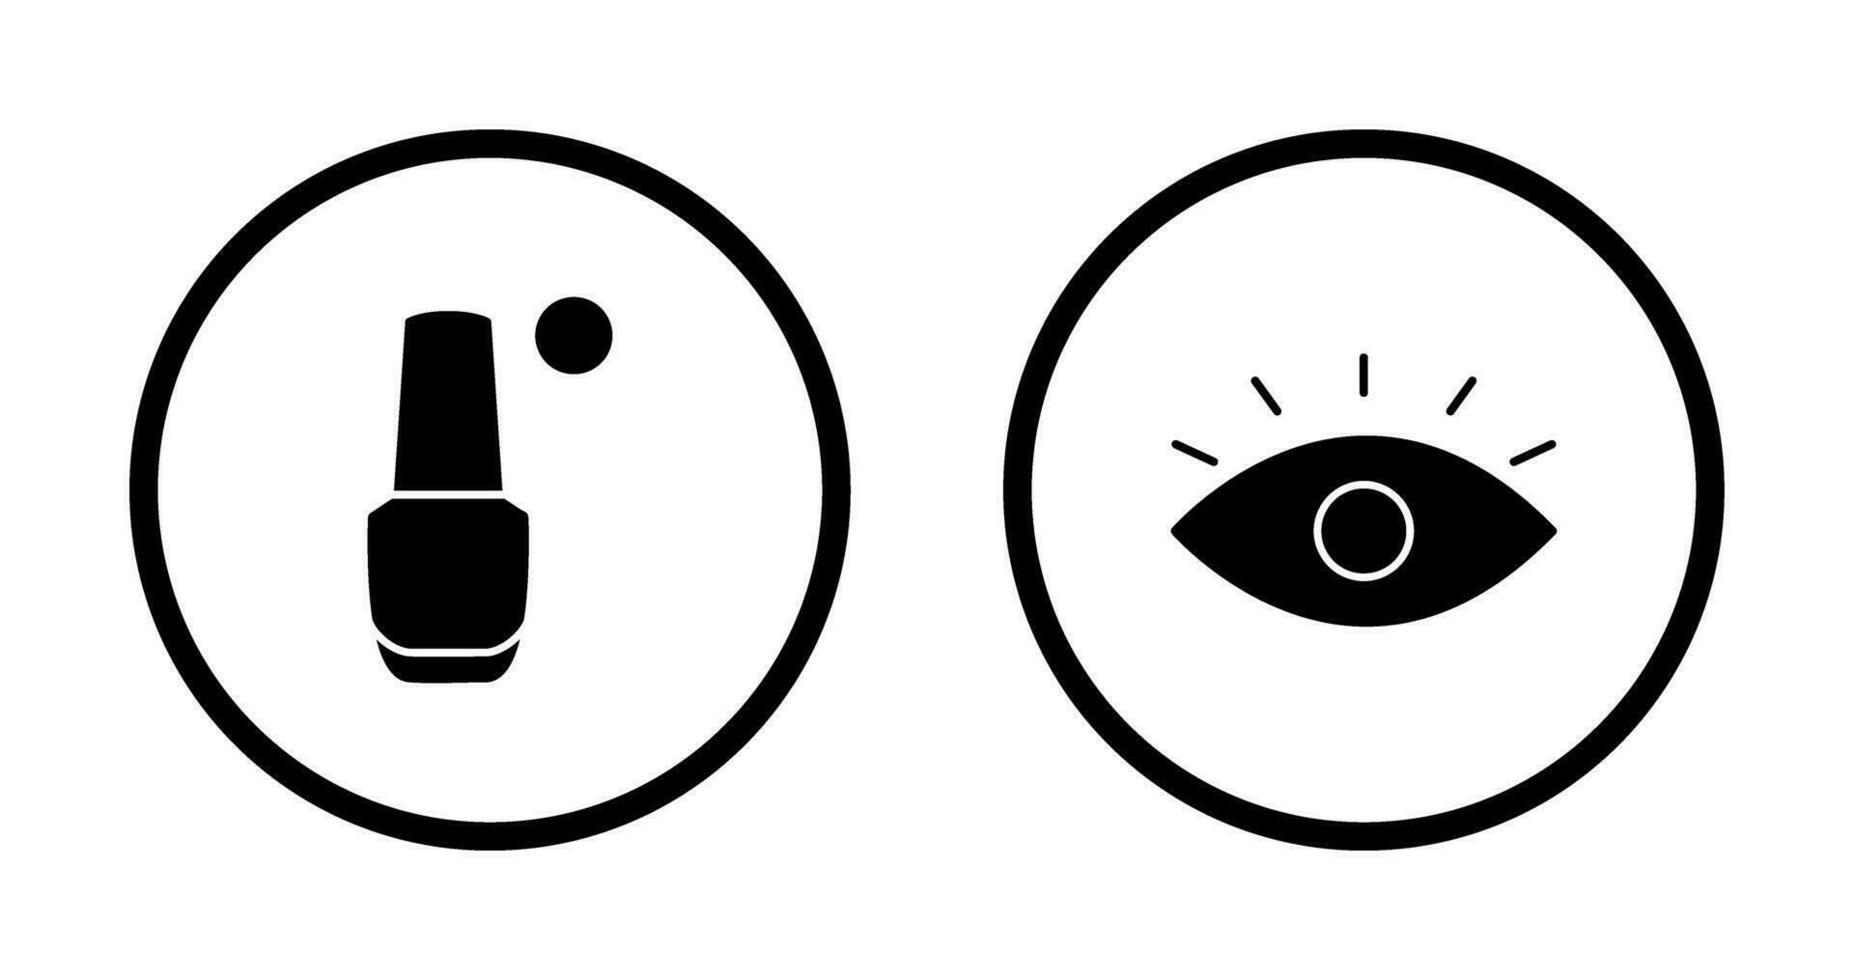 Nailpolish and Eye Icon vector